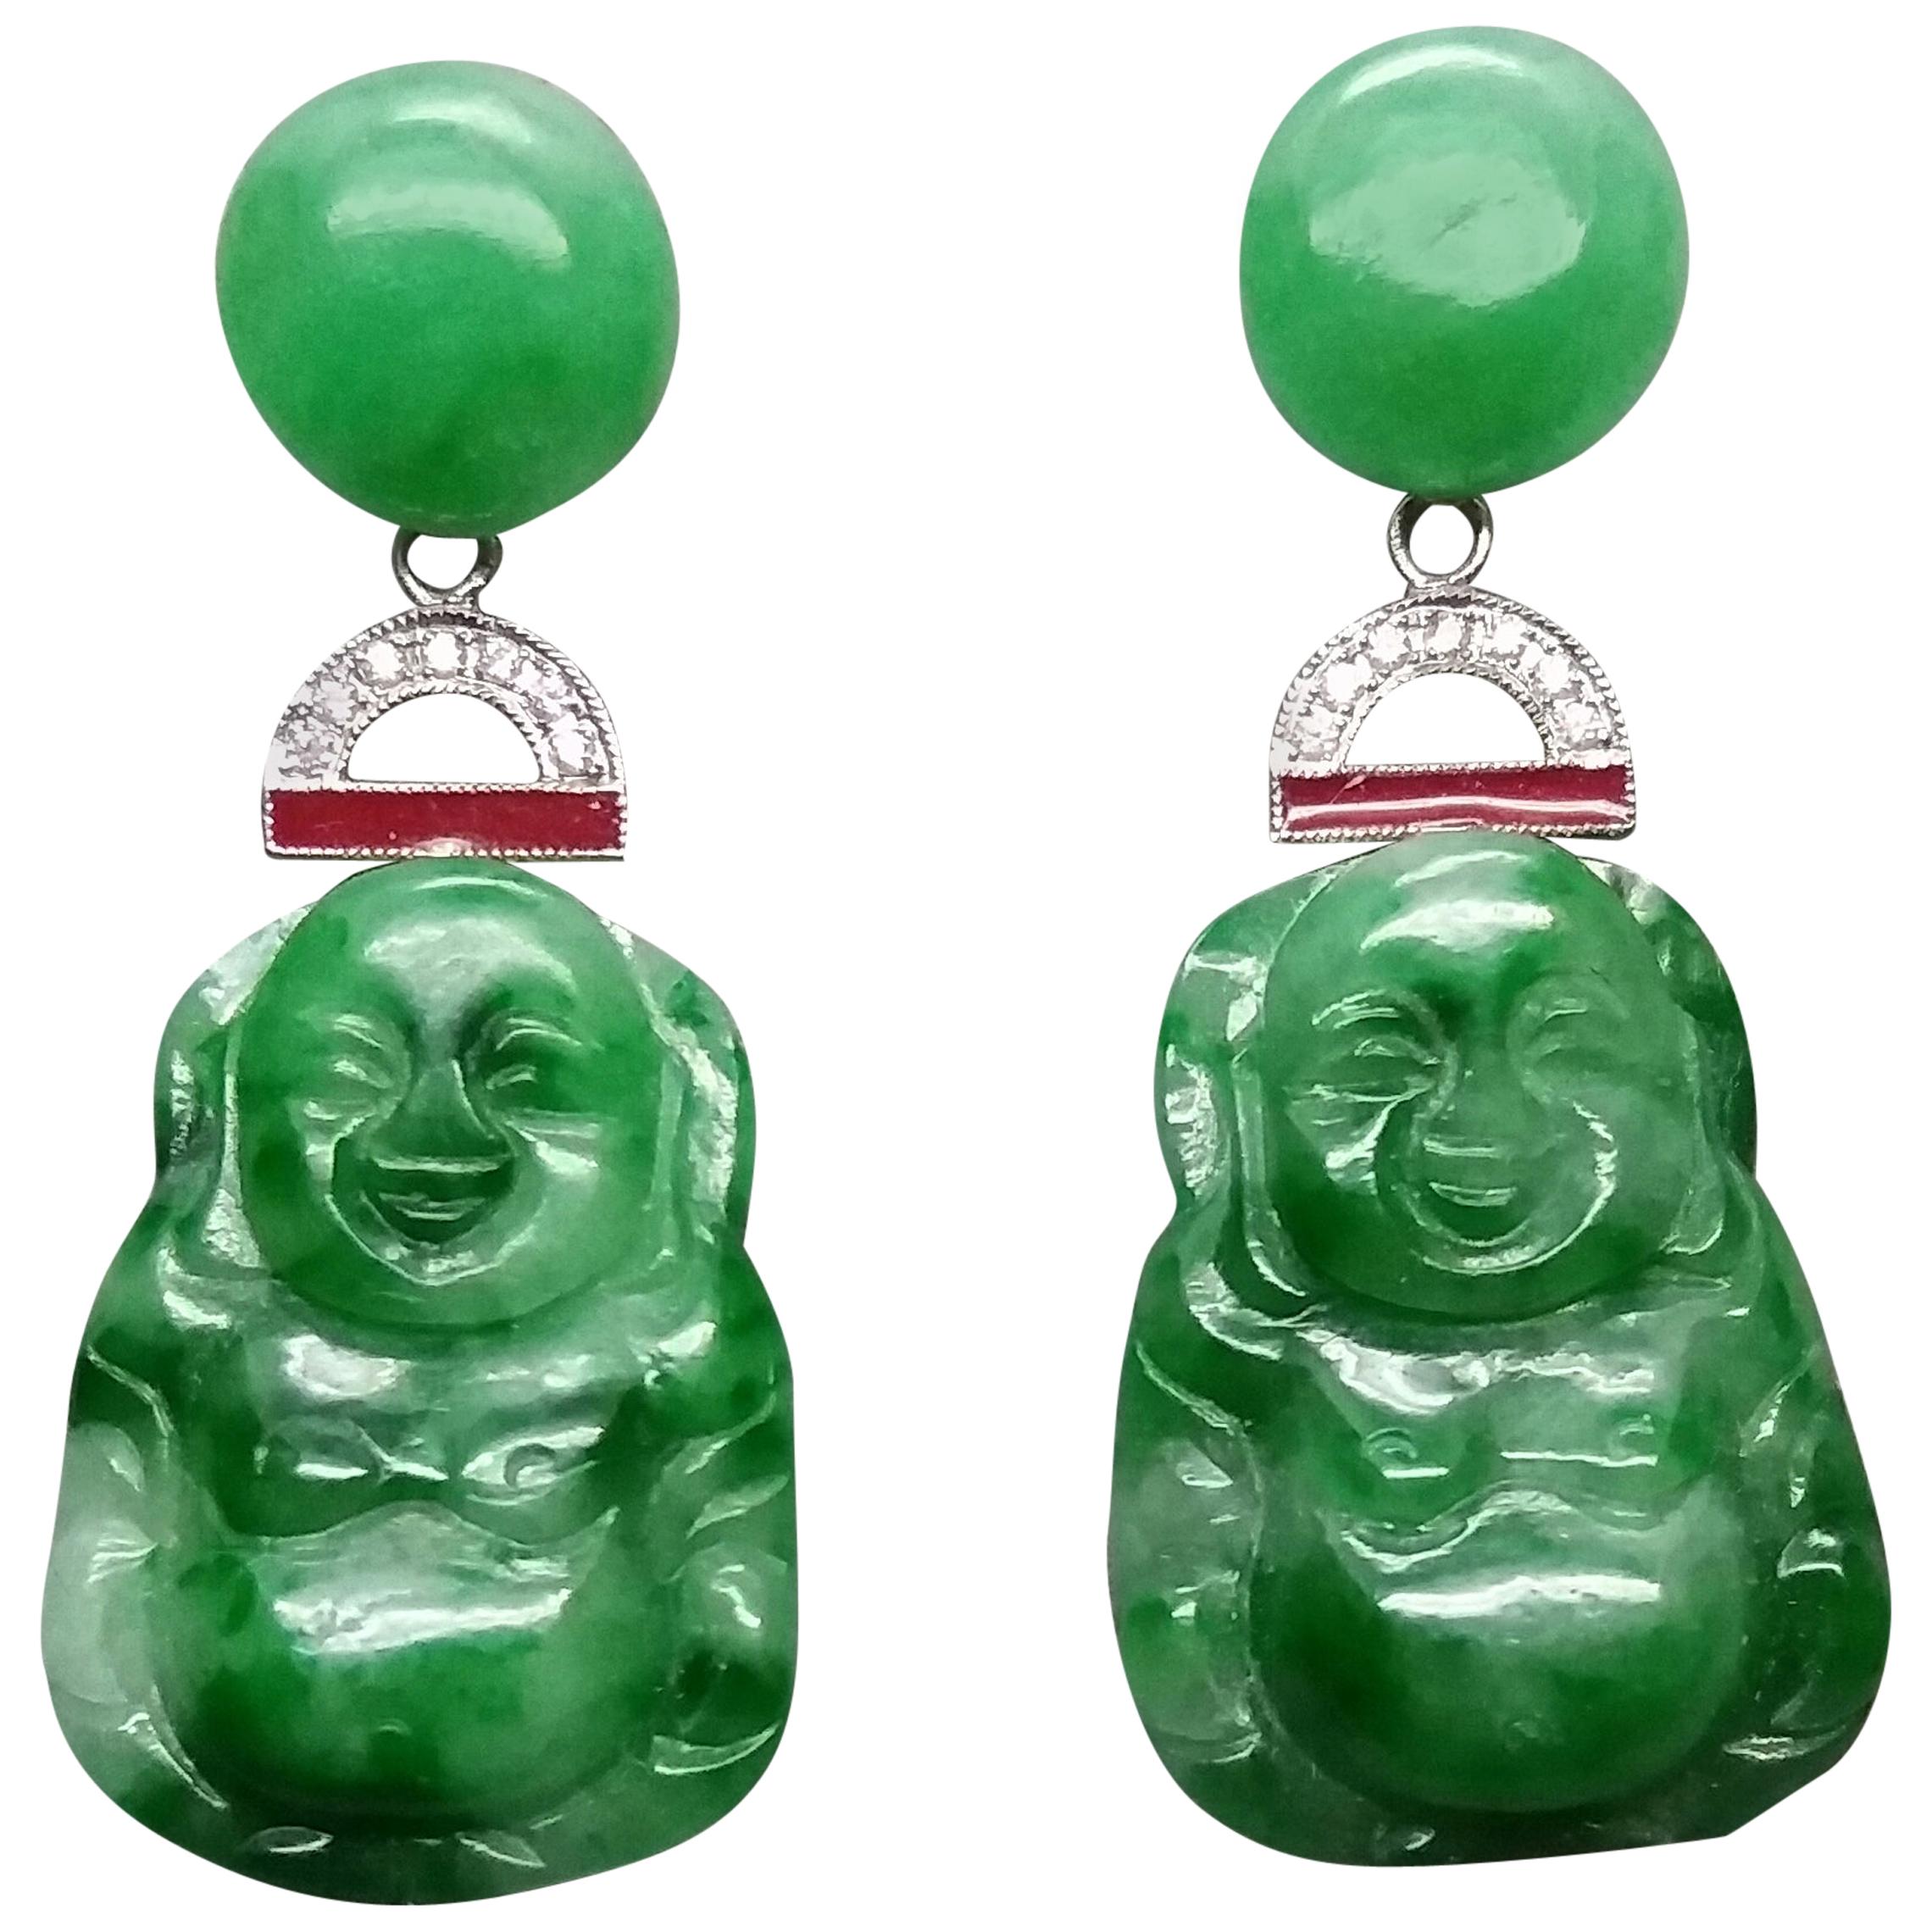 Is Burma jade real jade?